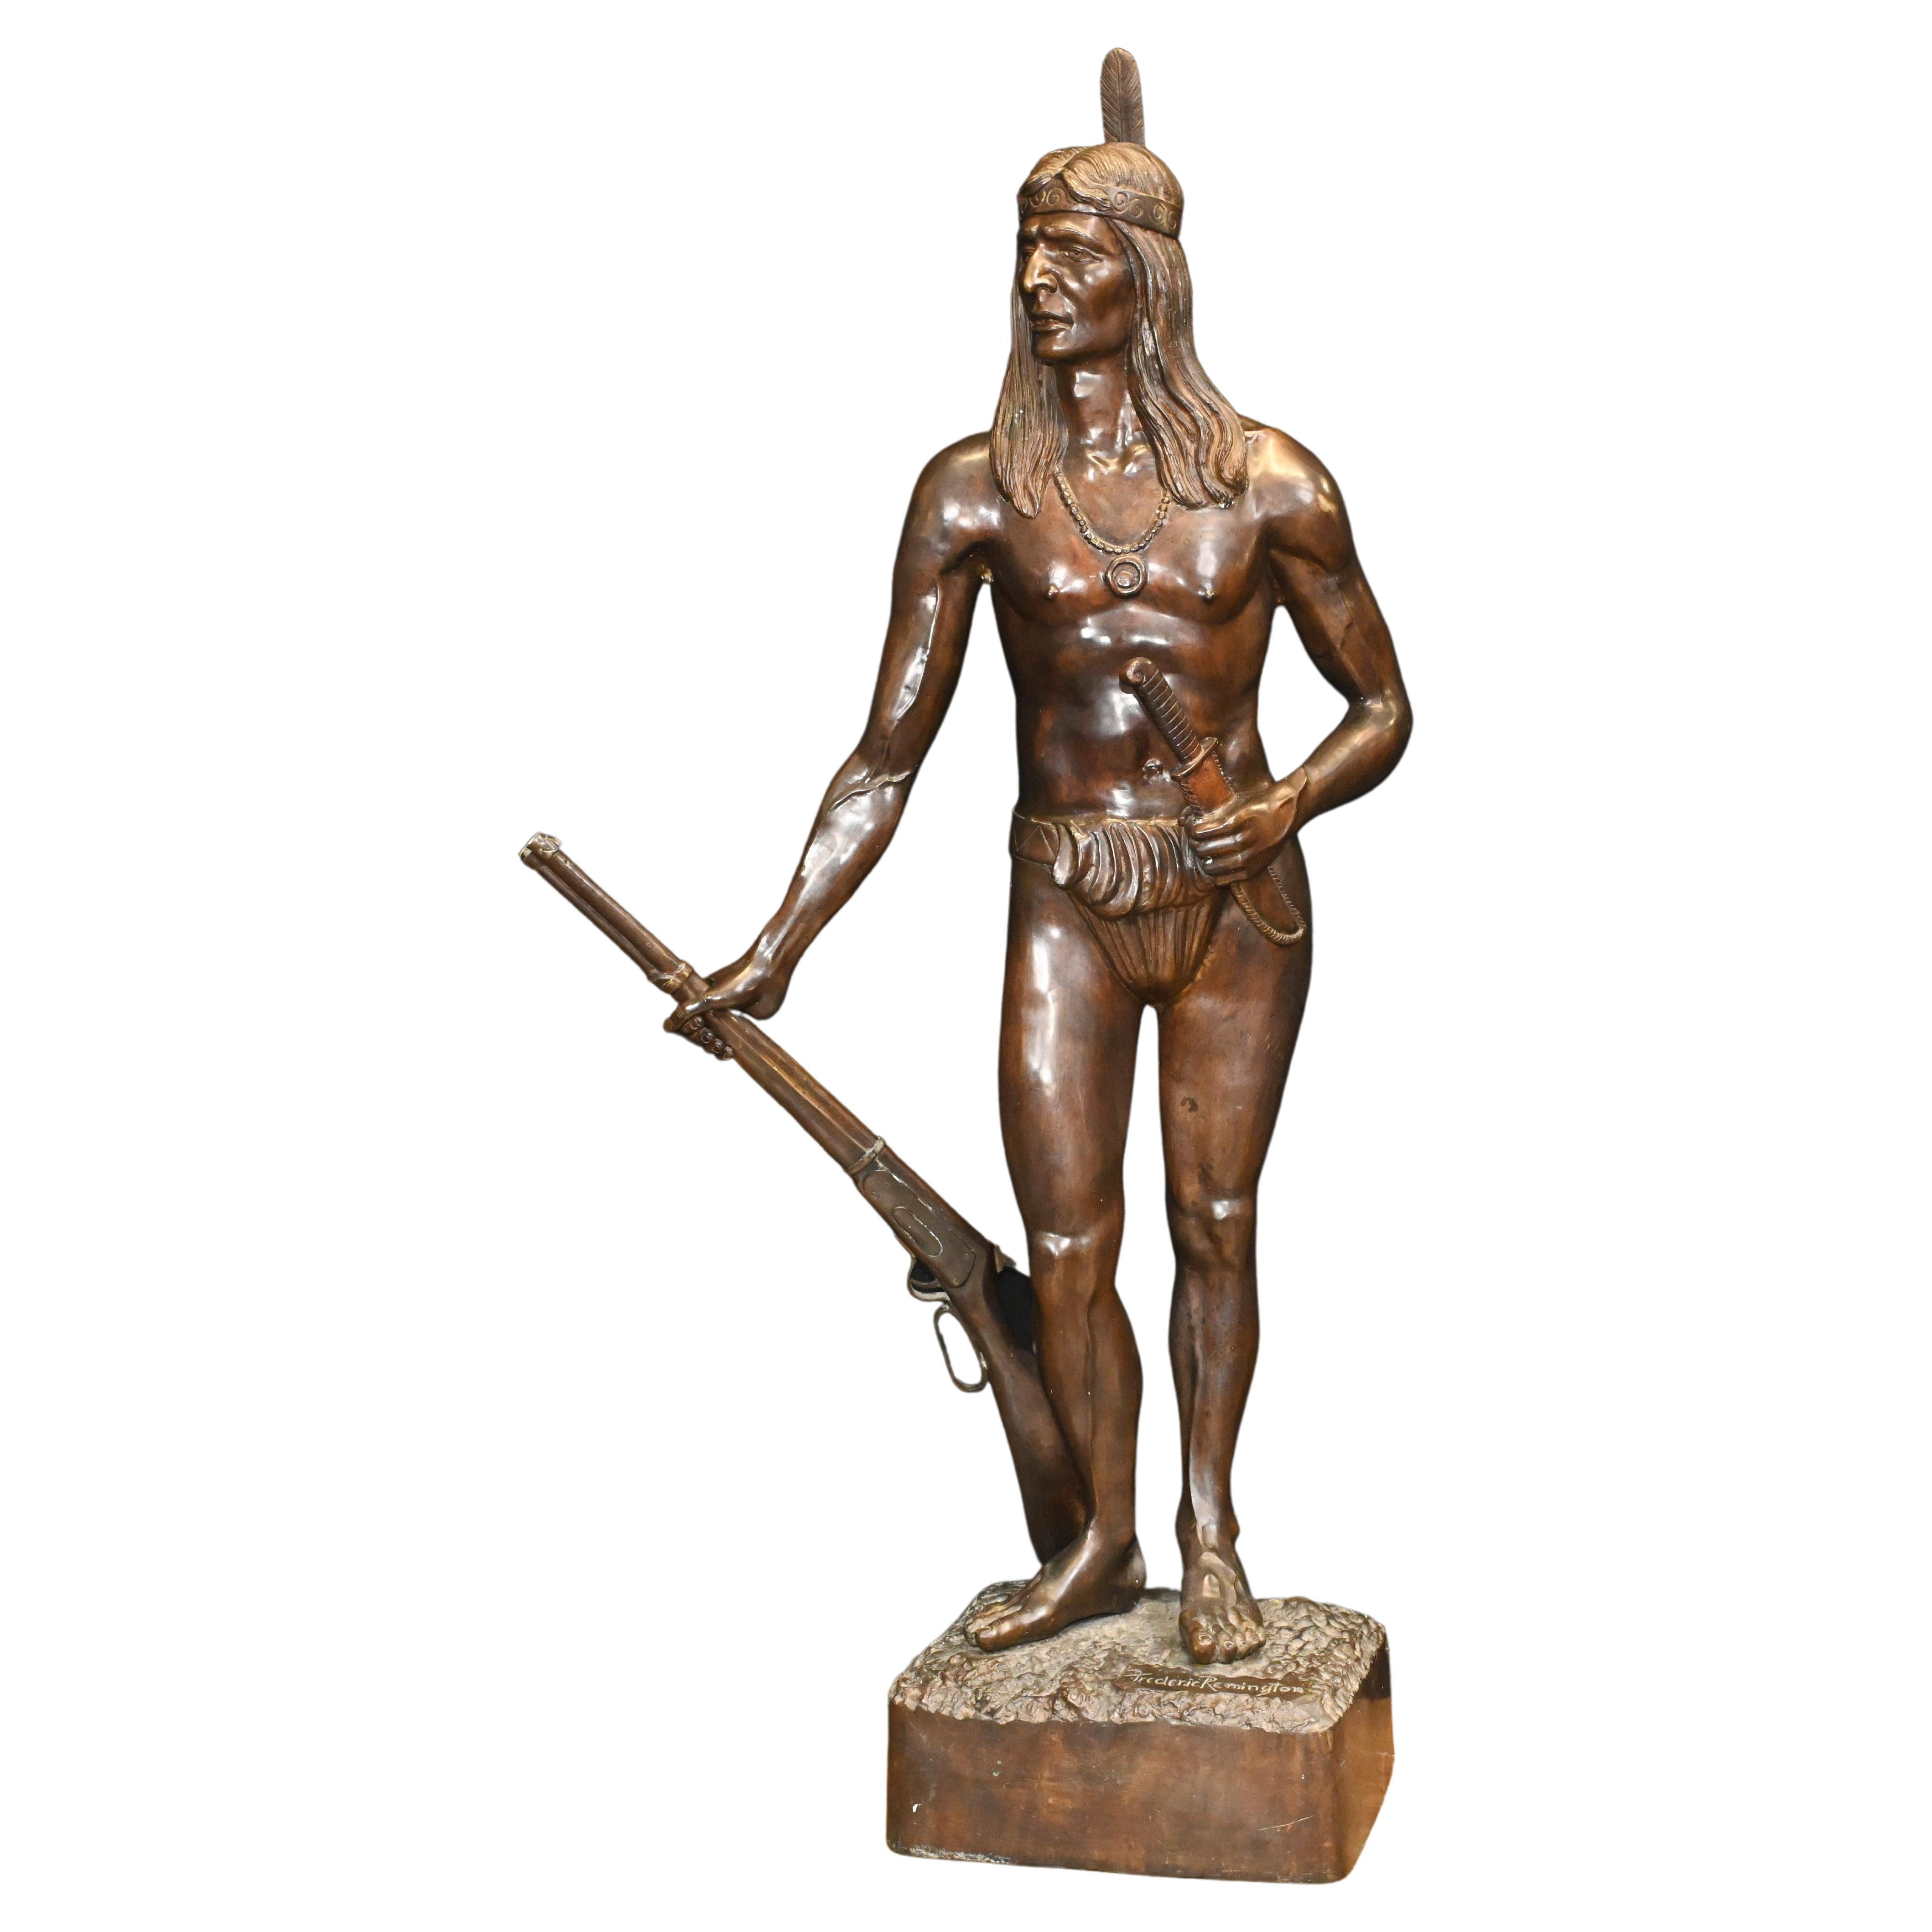 Statue indienne en bronze sculpt de Frederic Remington, grandeur nature, Casti amrindien